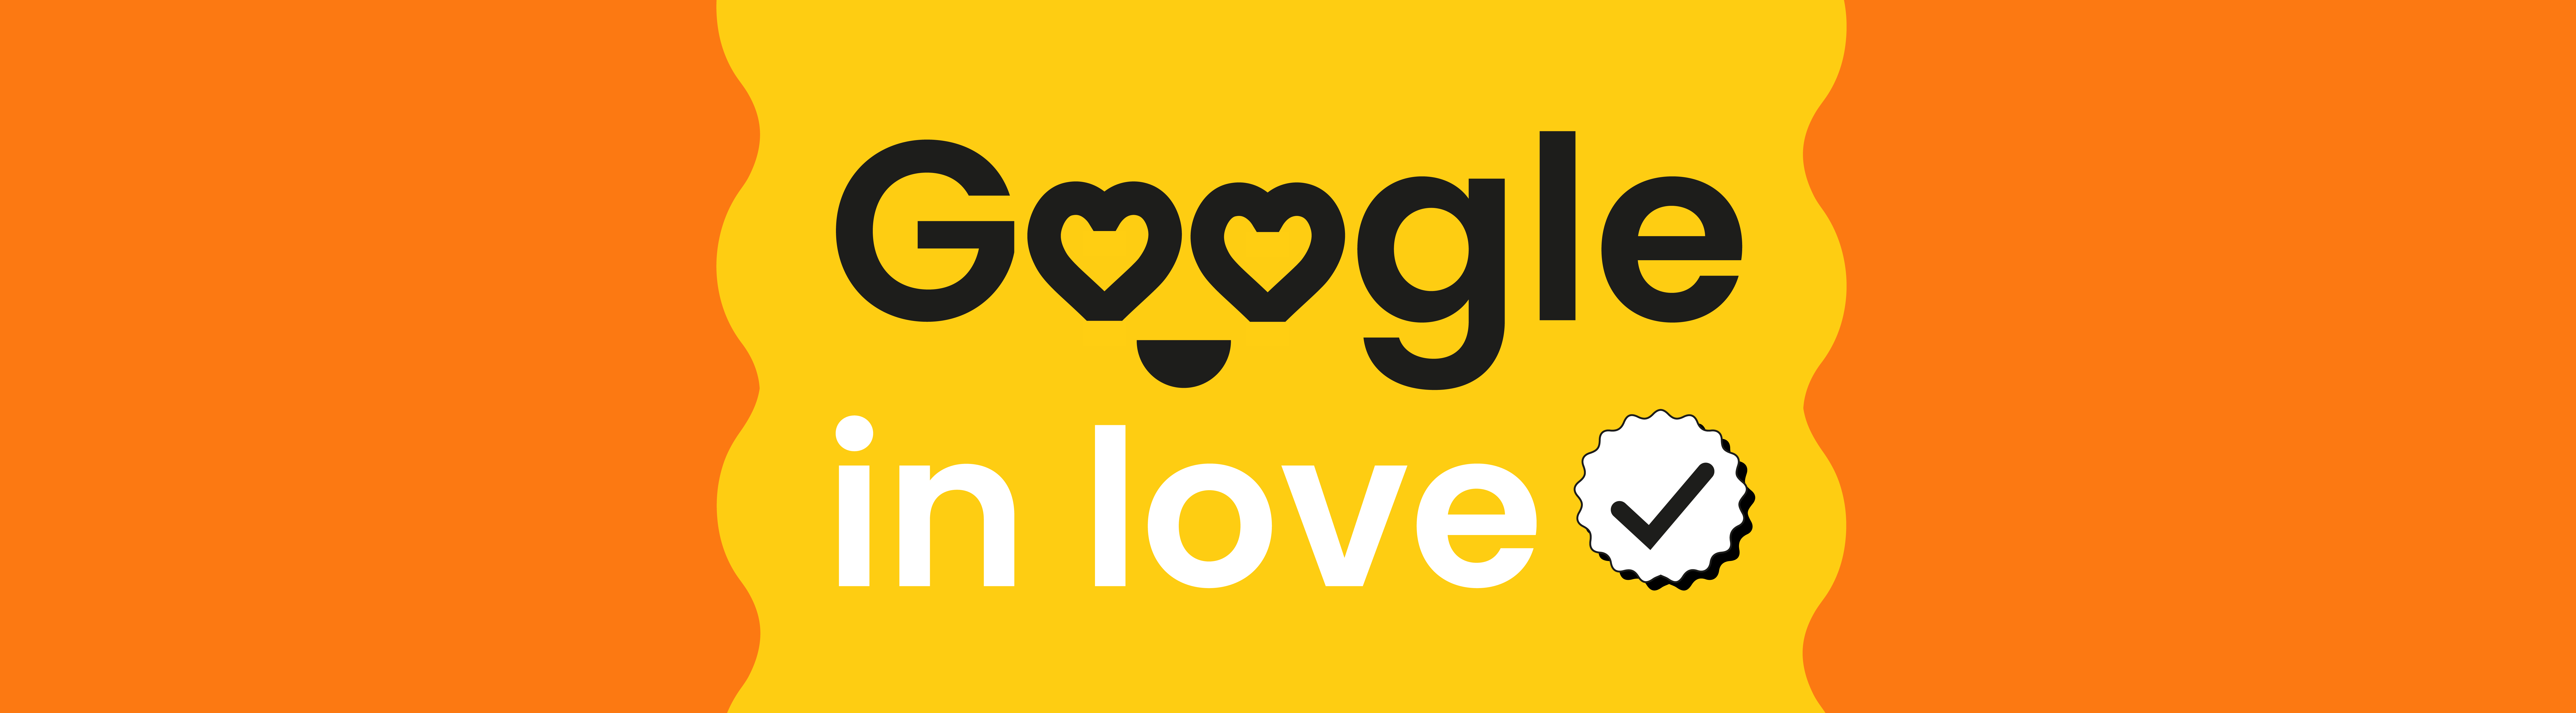 Google in love